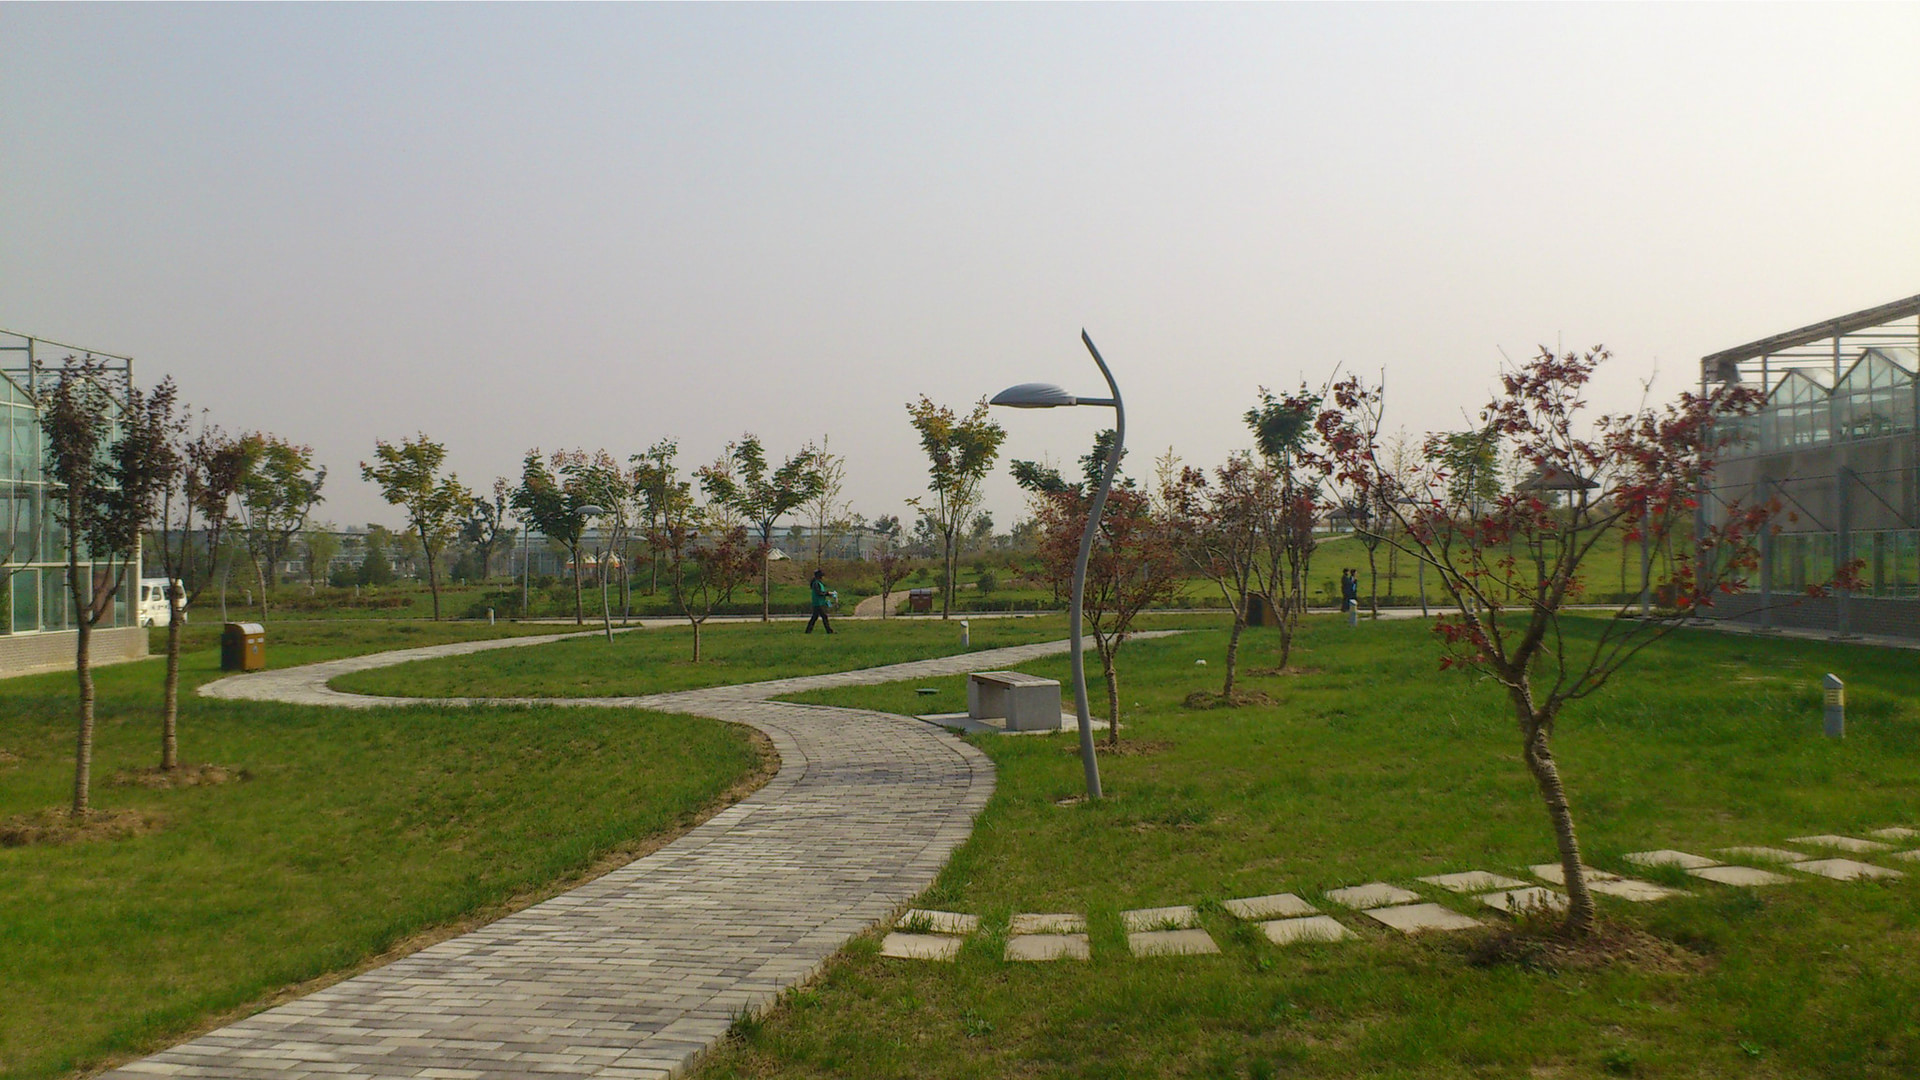 西安曲江农业博览园